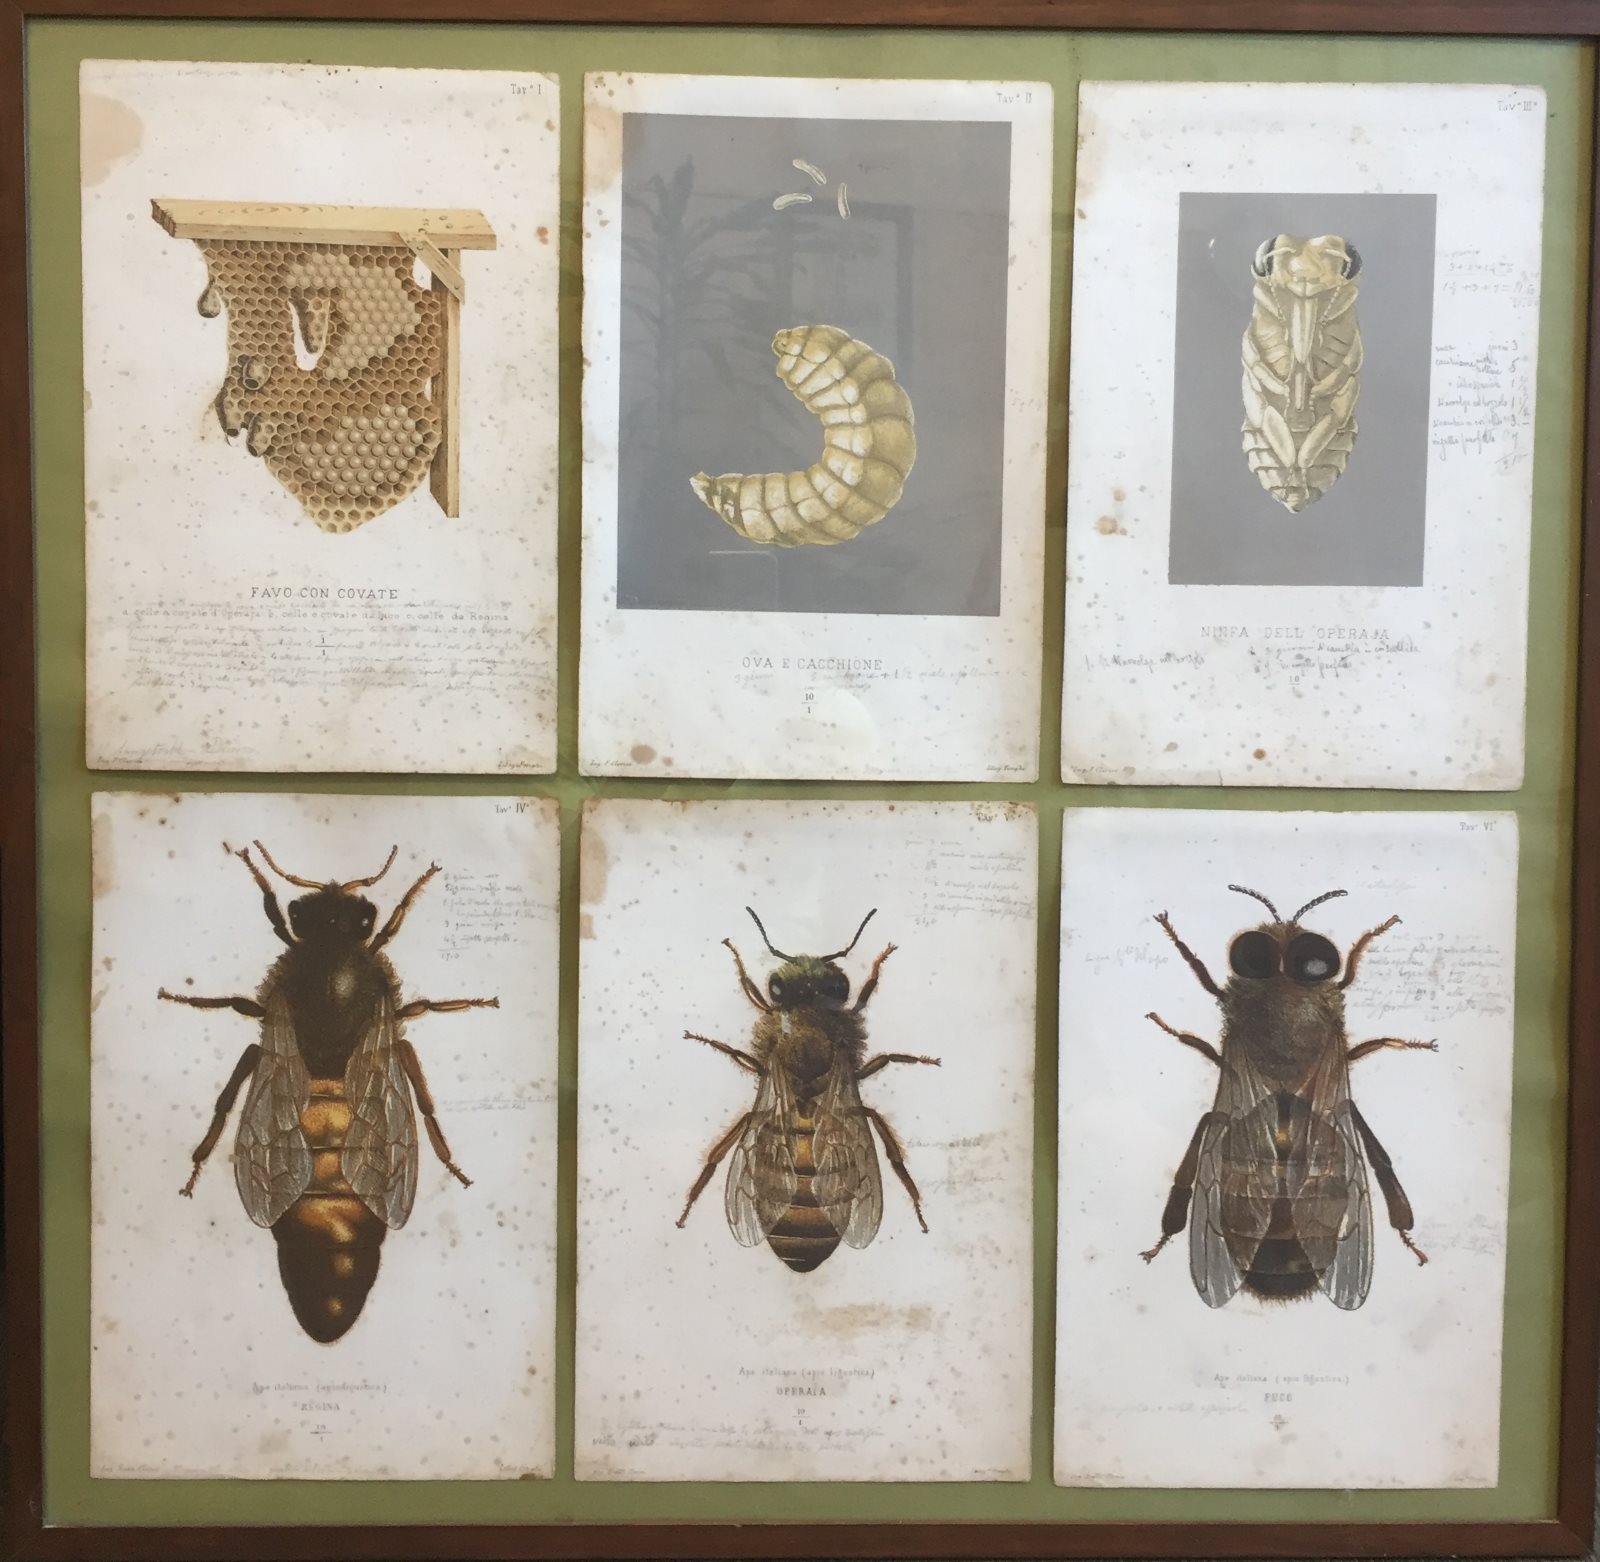 Antico libro realizzato a mano sull'anatomia dell'ape